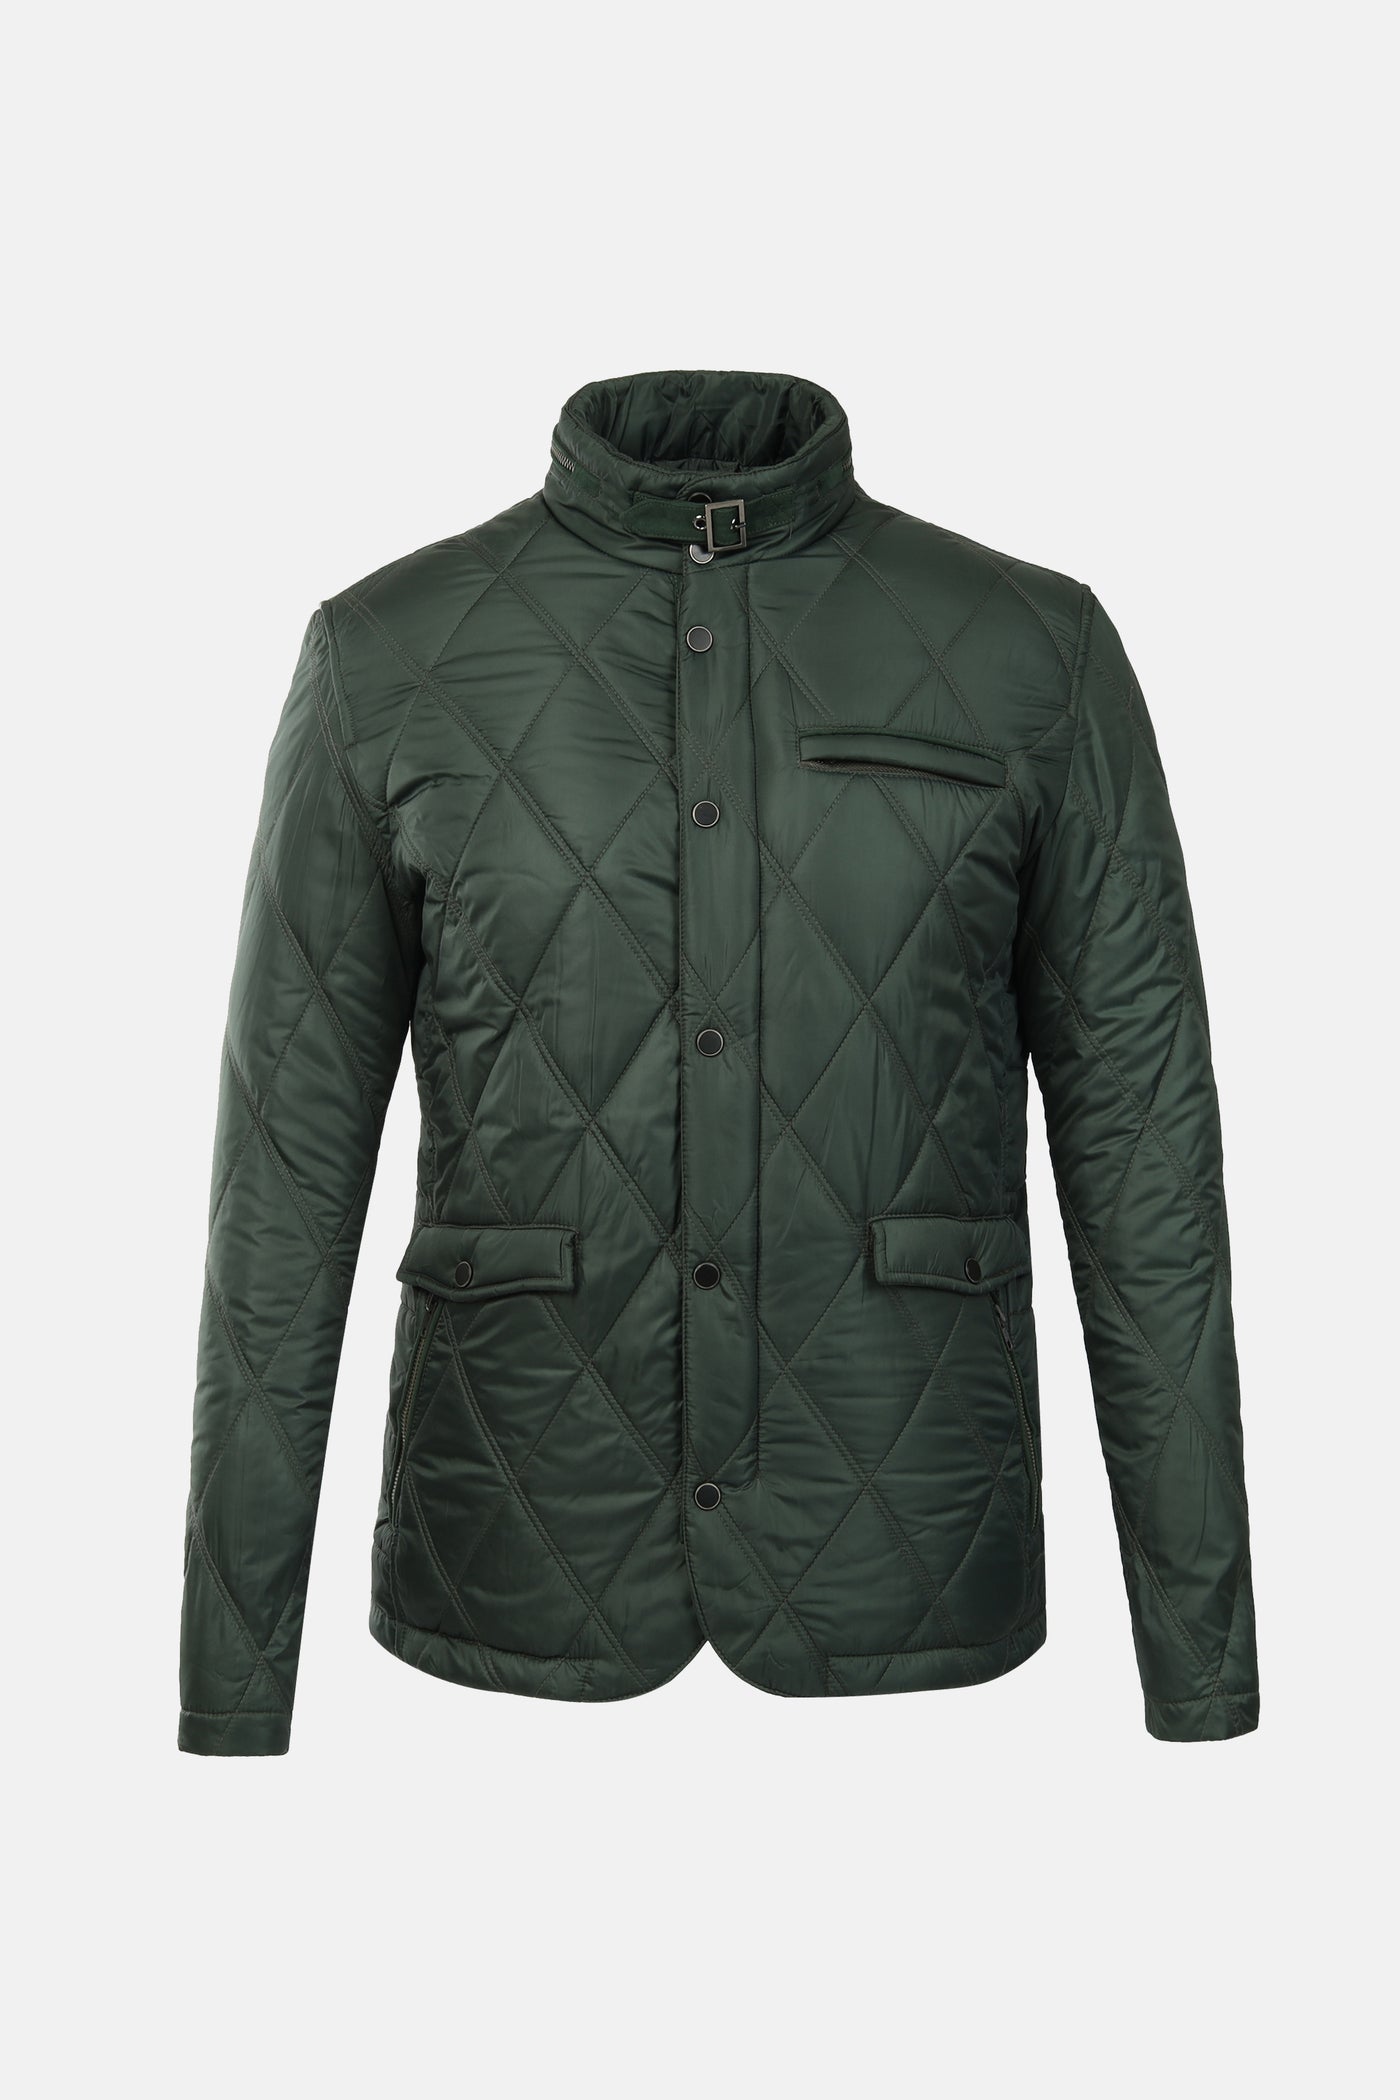 Diamond Shape Waterproof Dark Green Sweater Jacket